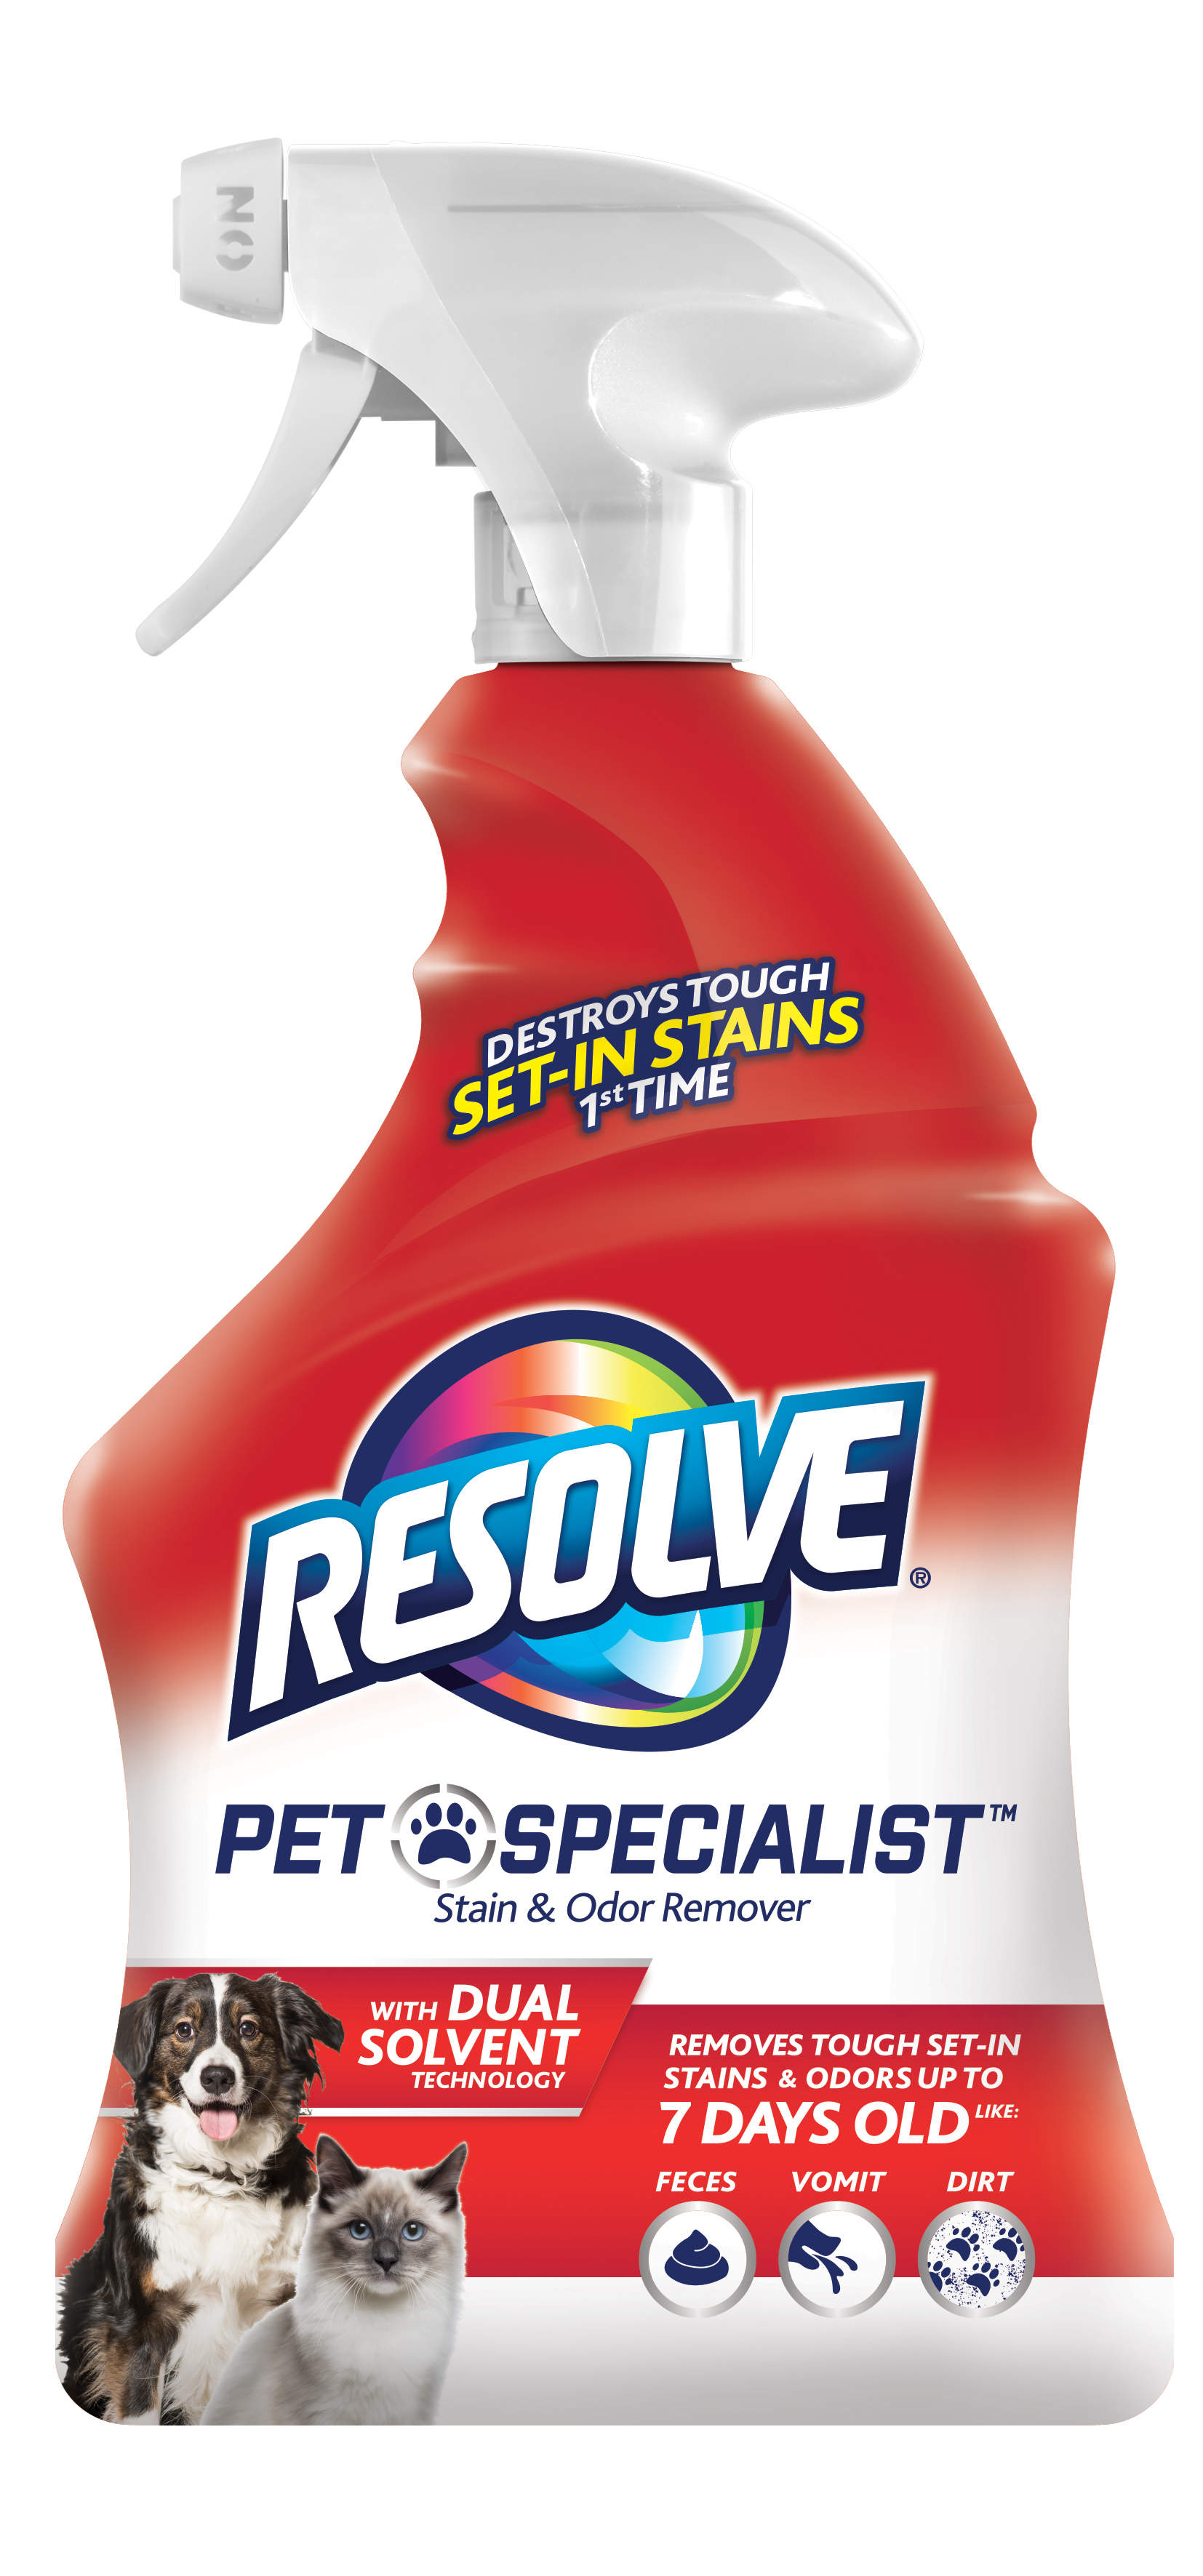 Resolve Pet Expert Brushing Kit, Easy Clean